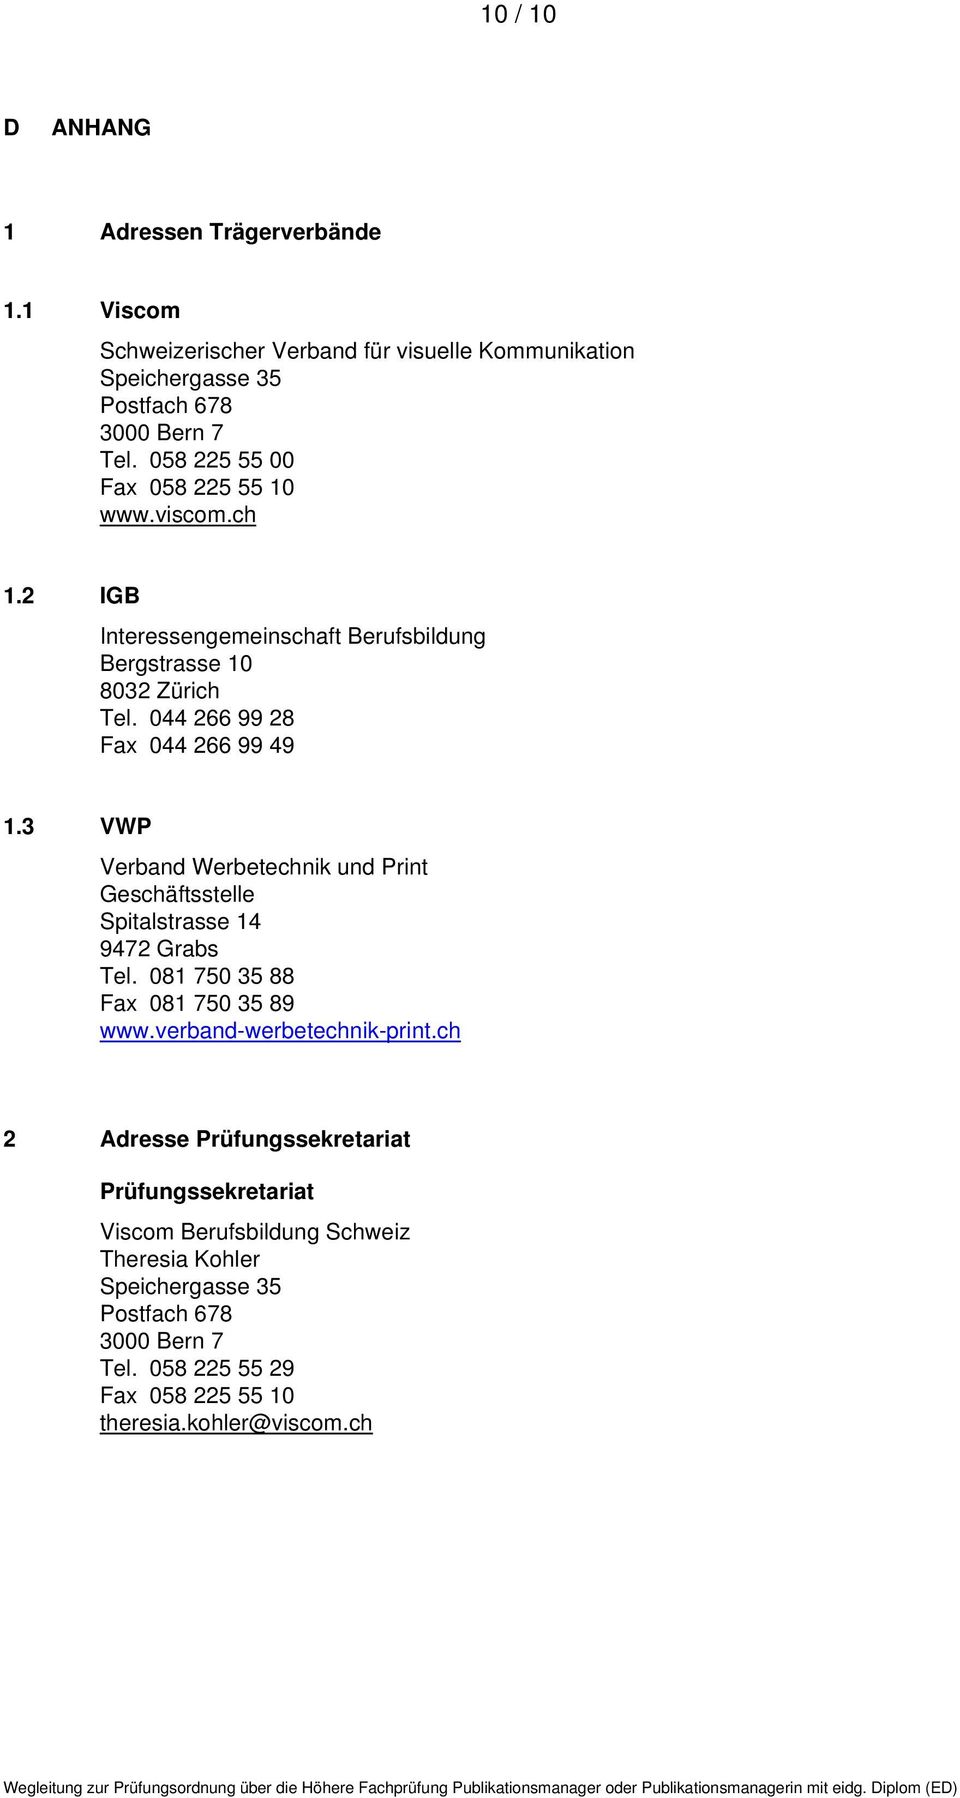 3 VWP Verband Werbetechnik und Print Geschäftsstelle Spitalstrasse 14 9472 Grabs Tel. 081 750 35 88 Fax 081 750 35 89 www.verband-werbetechnik-print.